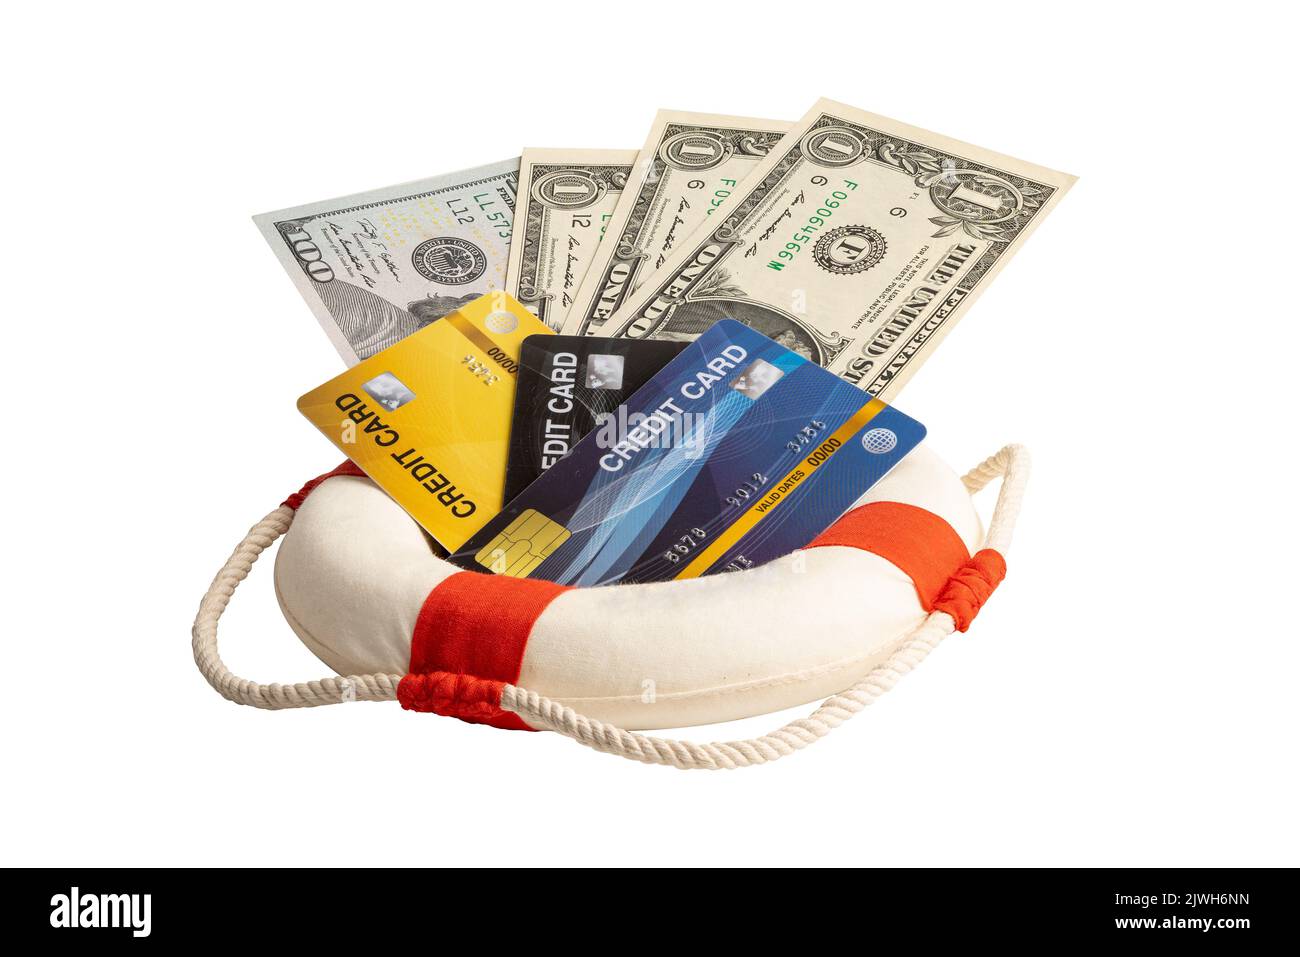 Finanzkrise, Rettungsboot mit US-Dollar-Banknoten, Unterstützung und Sicherheit der Finanzen. Stockfoto